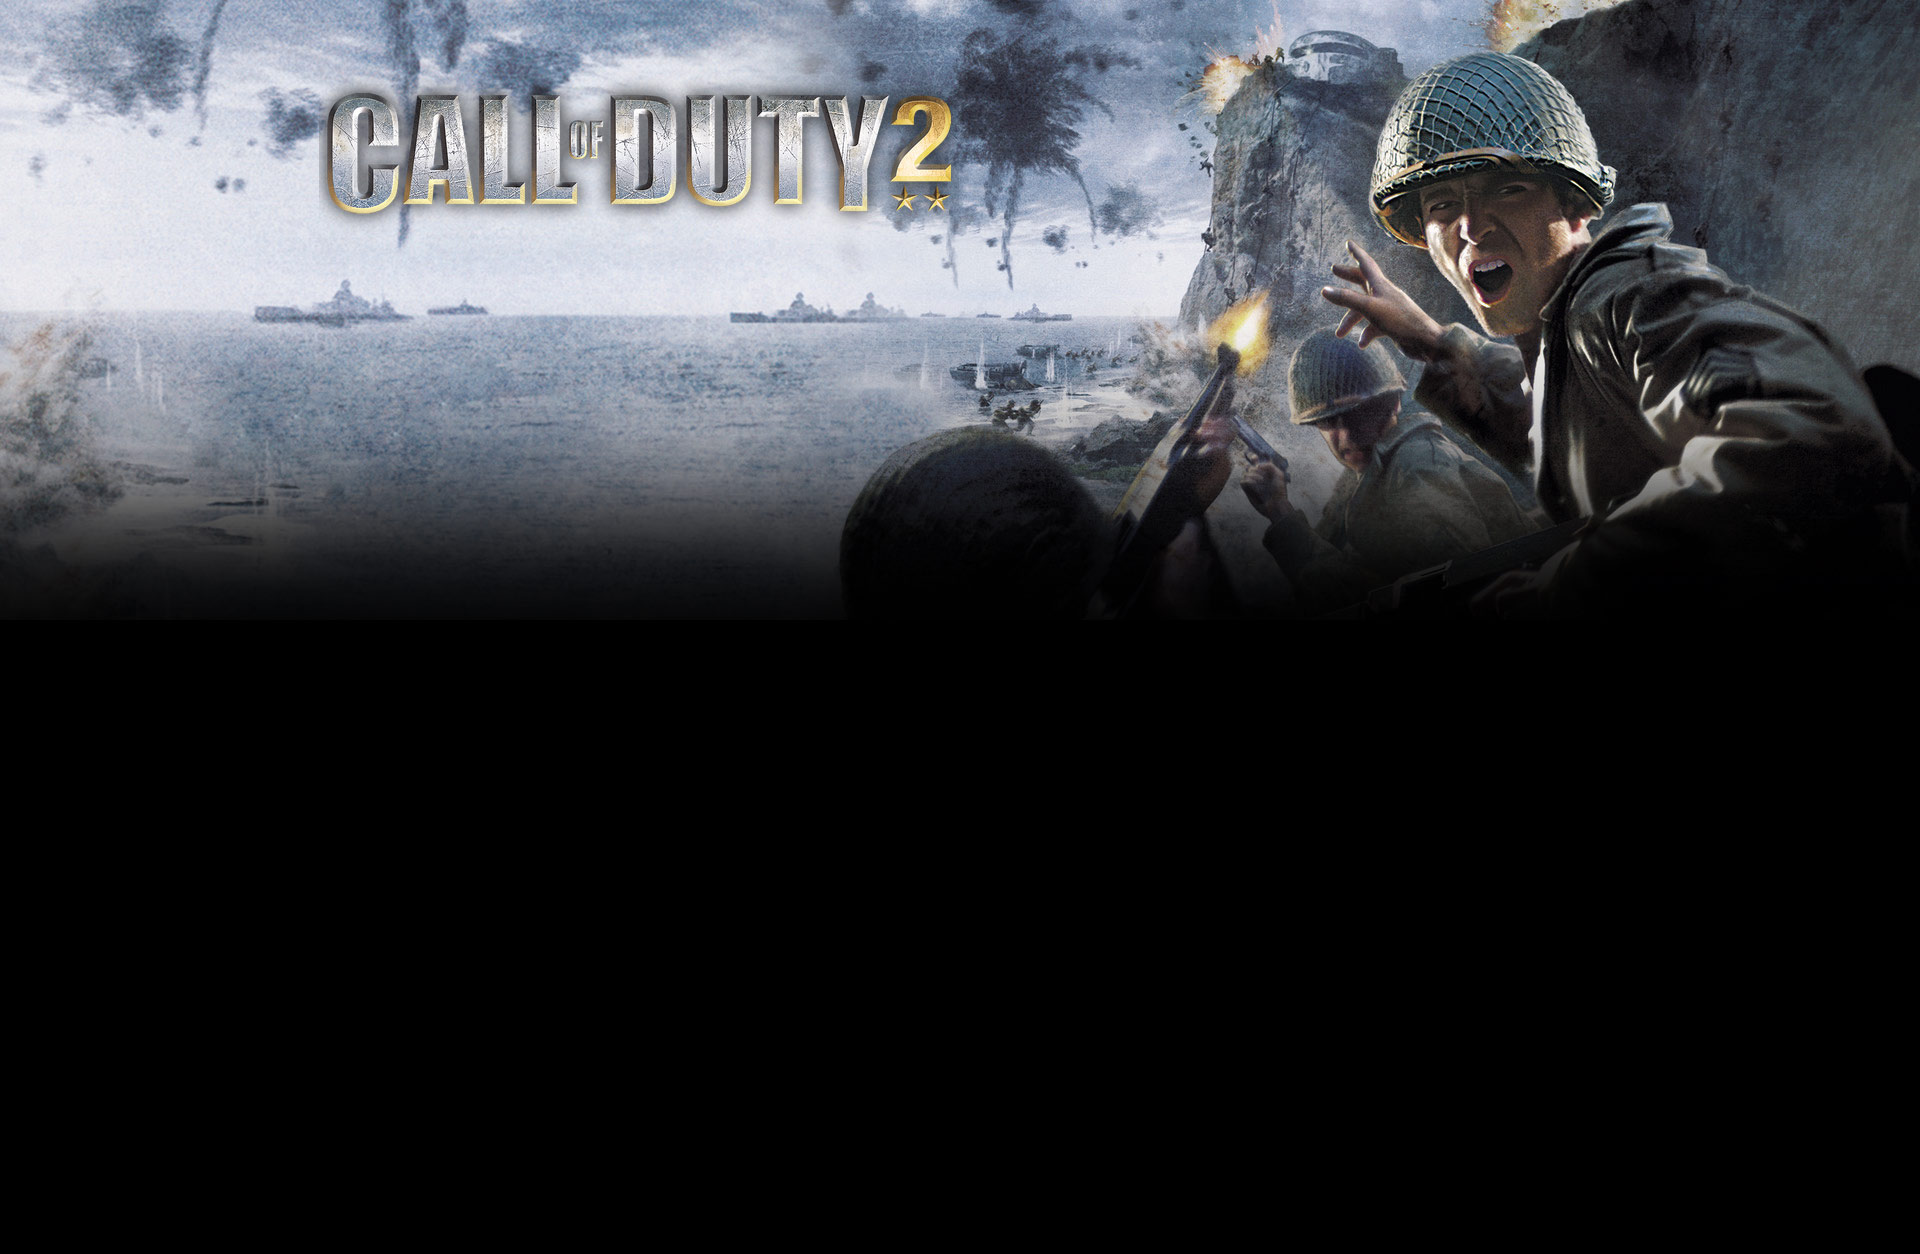 Call of Duty 2 (Mac)